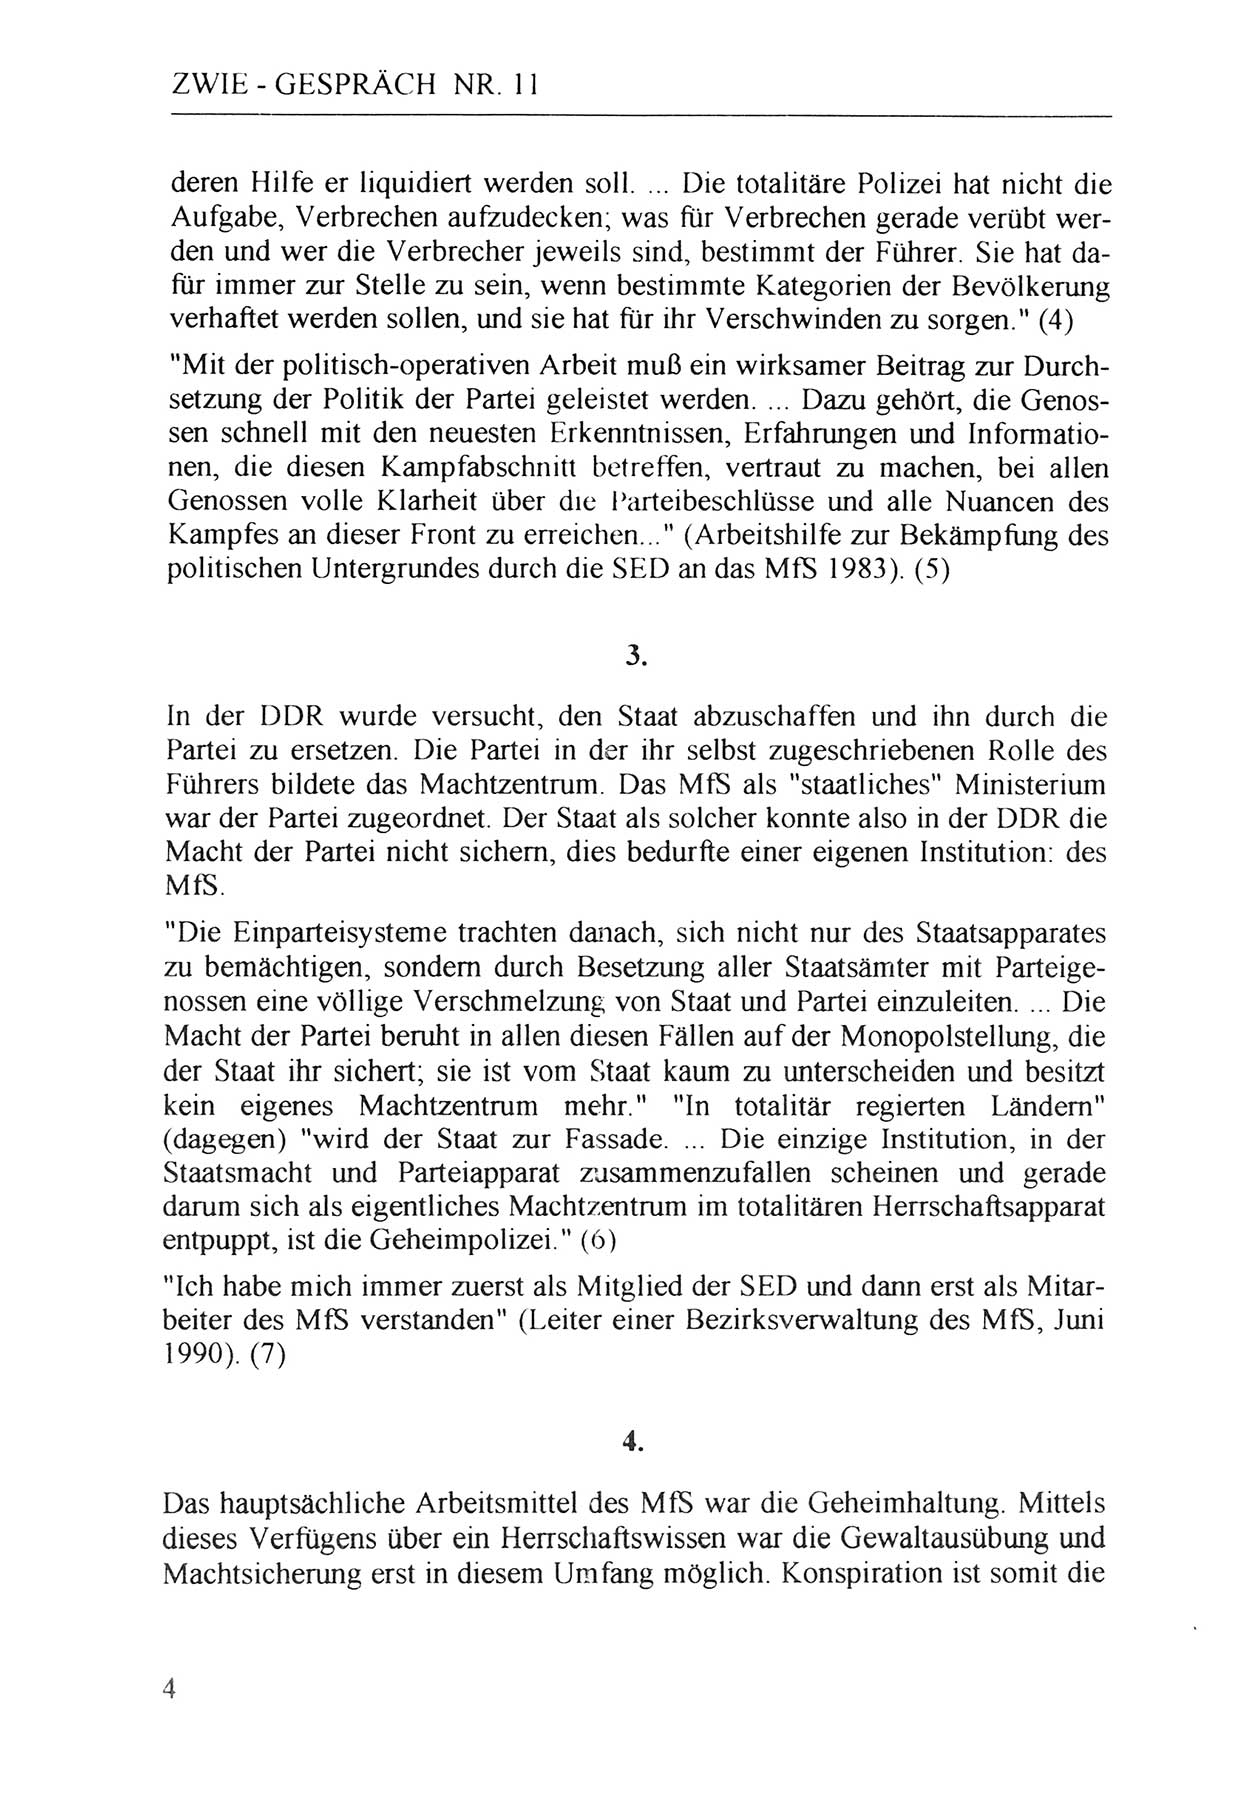 Zwie-Gespräch, Beiträge zur Aufarbeitung der Staatssicherheits-Vergangenheit [Deutsche Demokratische Republik (DDR)], Ausgabe Nr. 11, Berlin 1992, Seite 4 (Zwie-Gespr. Ausg. 11 1992, S. 4)